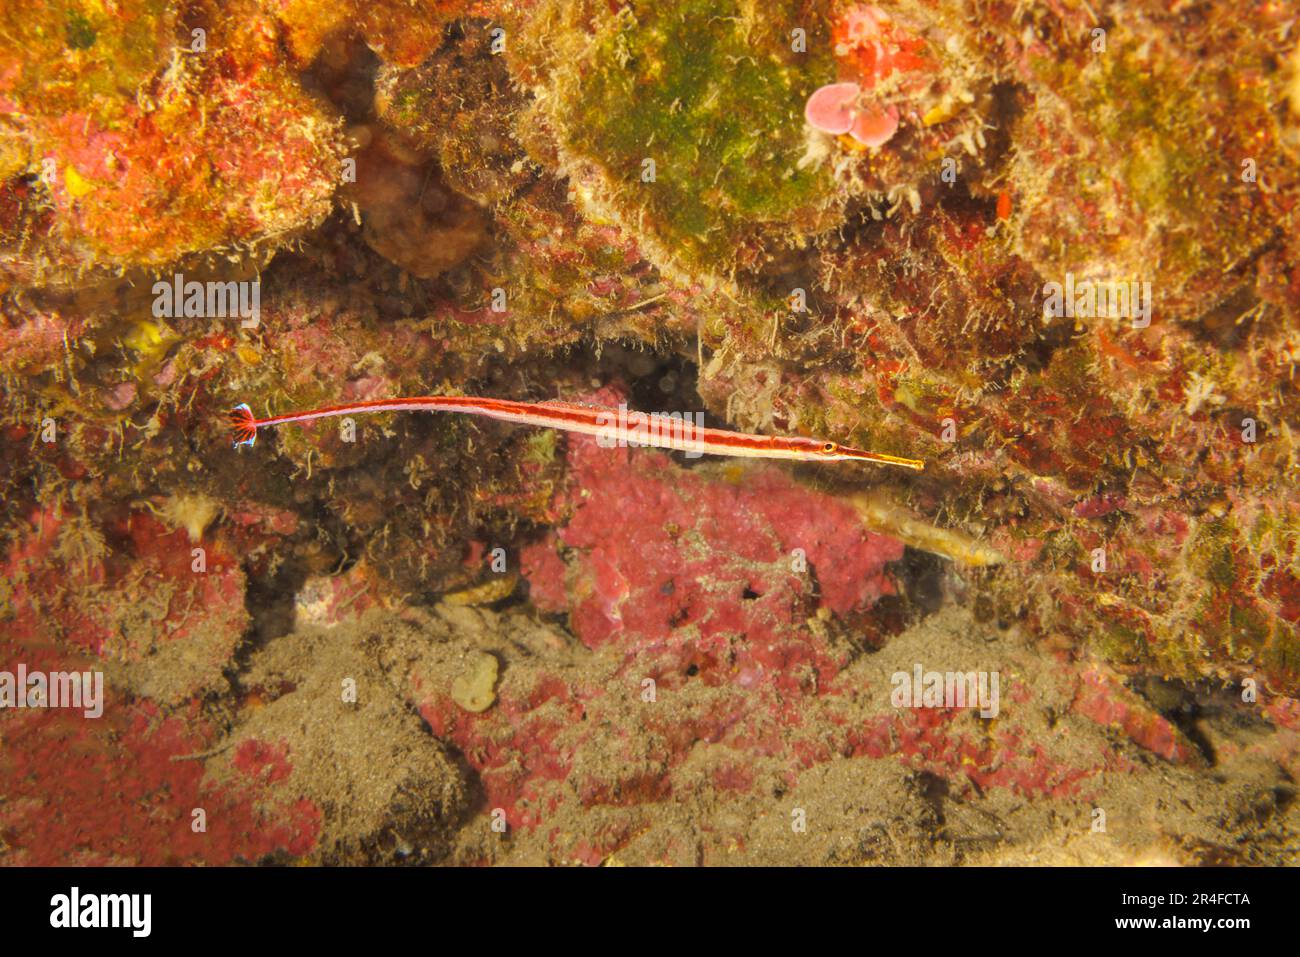 Questo pesce rosso maschio endemico, Dunckerocampus baldwini, sta trasportando le uova sul suo lato inferiore. Questa specie si trova sotto sporgenze o in grotte dove Foto Stock